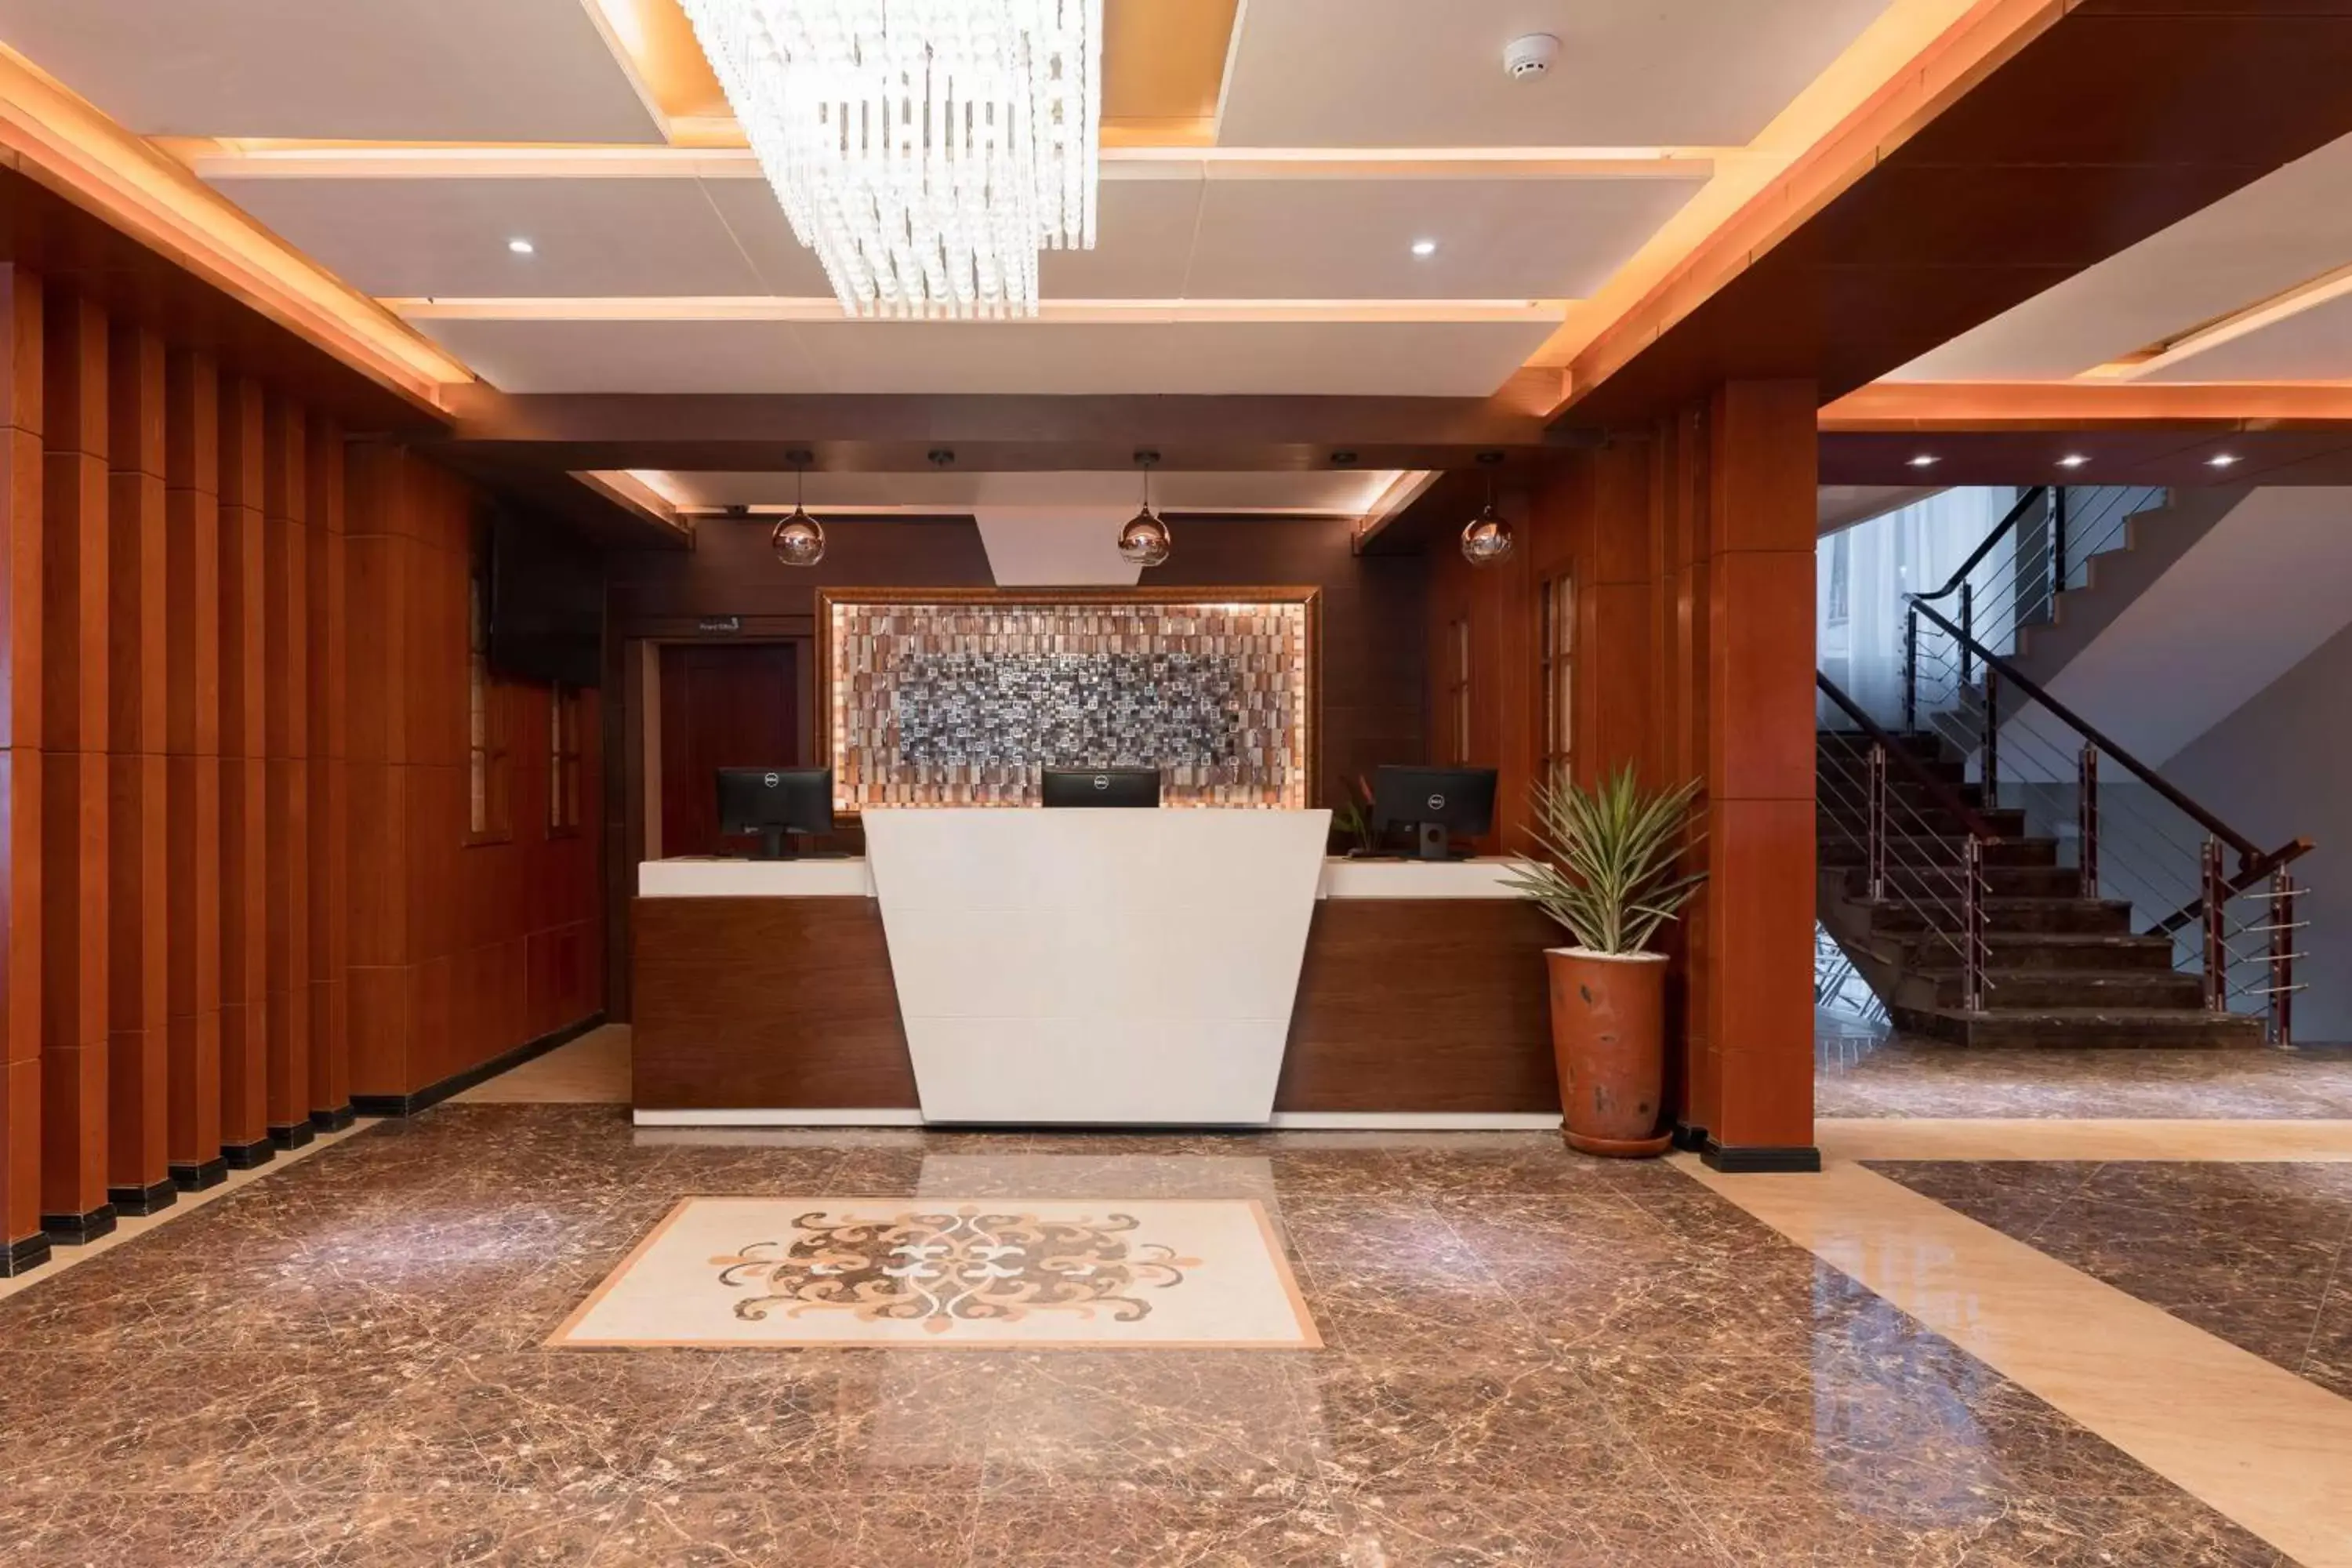 Lobby or reception, Lobby/Reception in Best Western Plus Pearl Addis